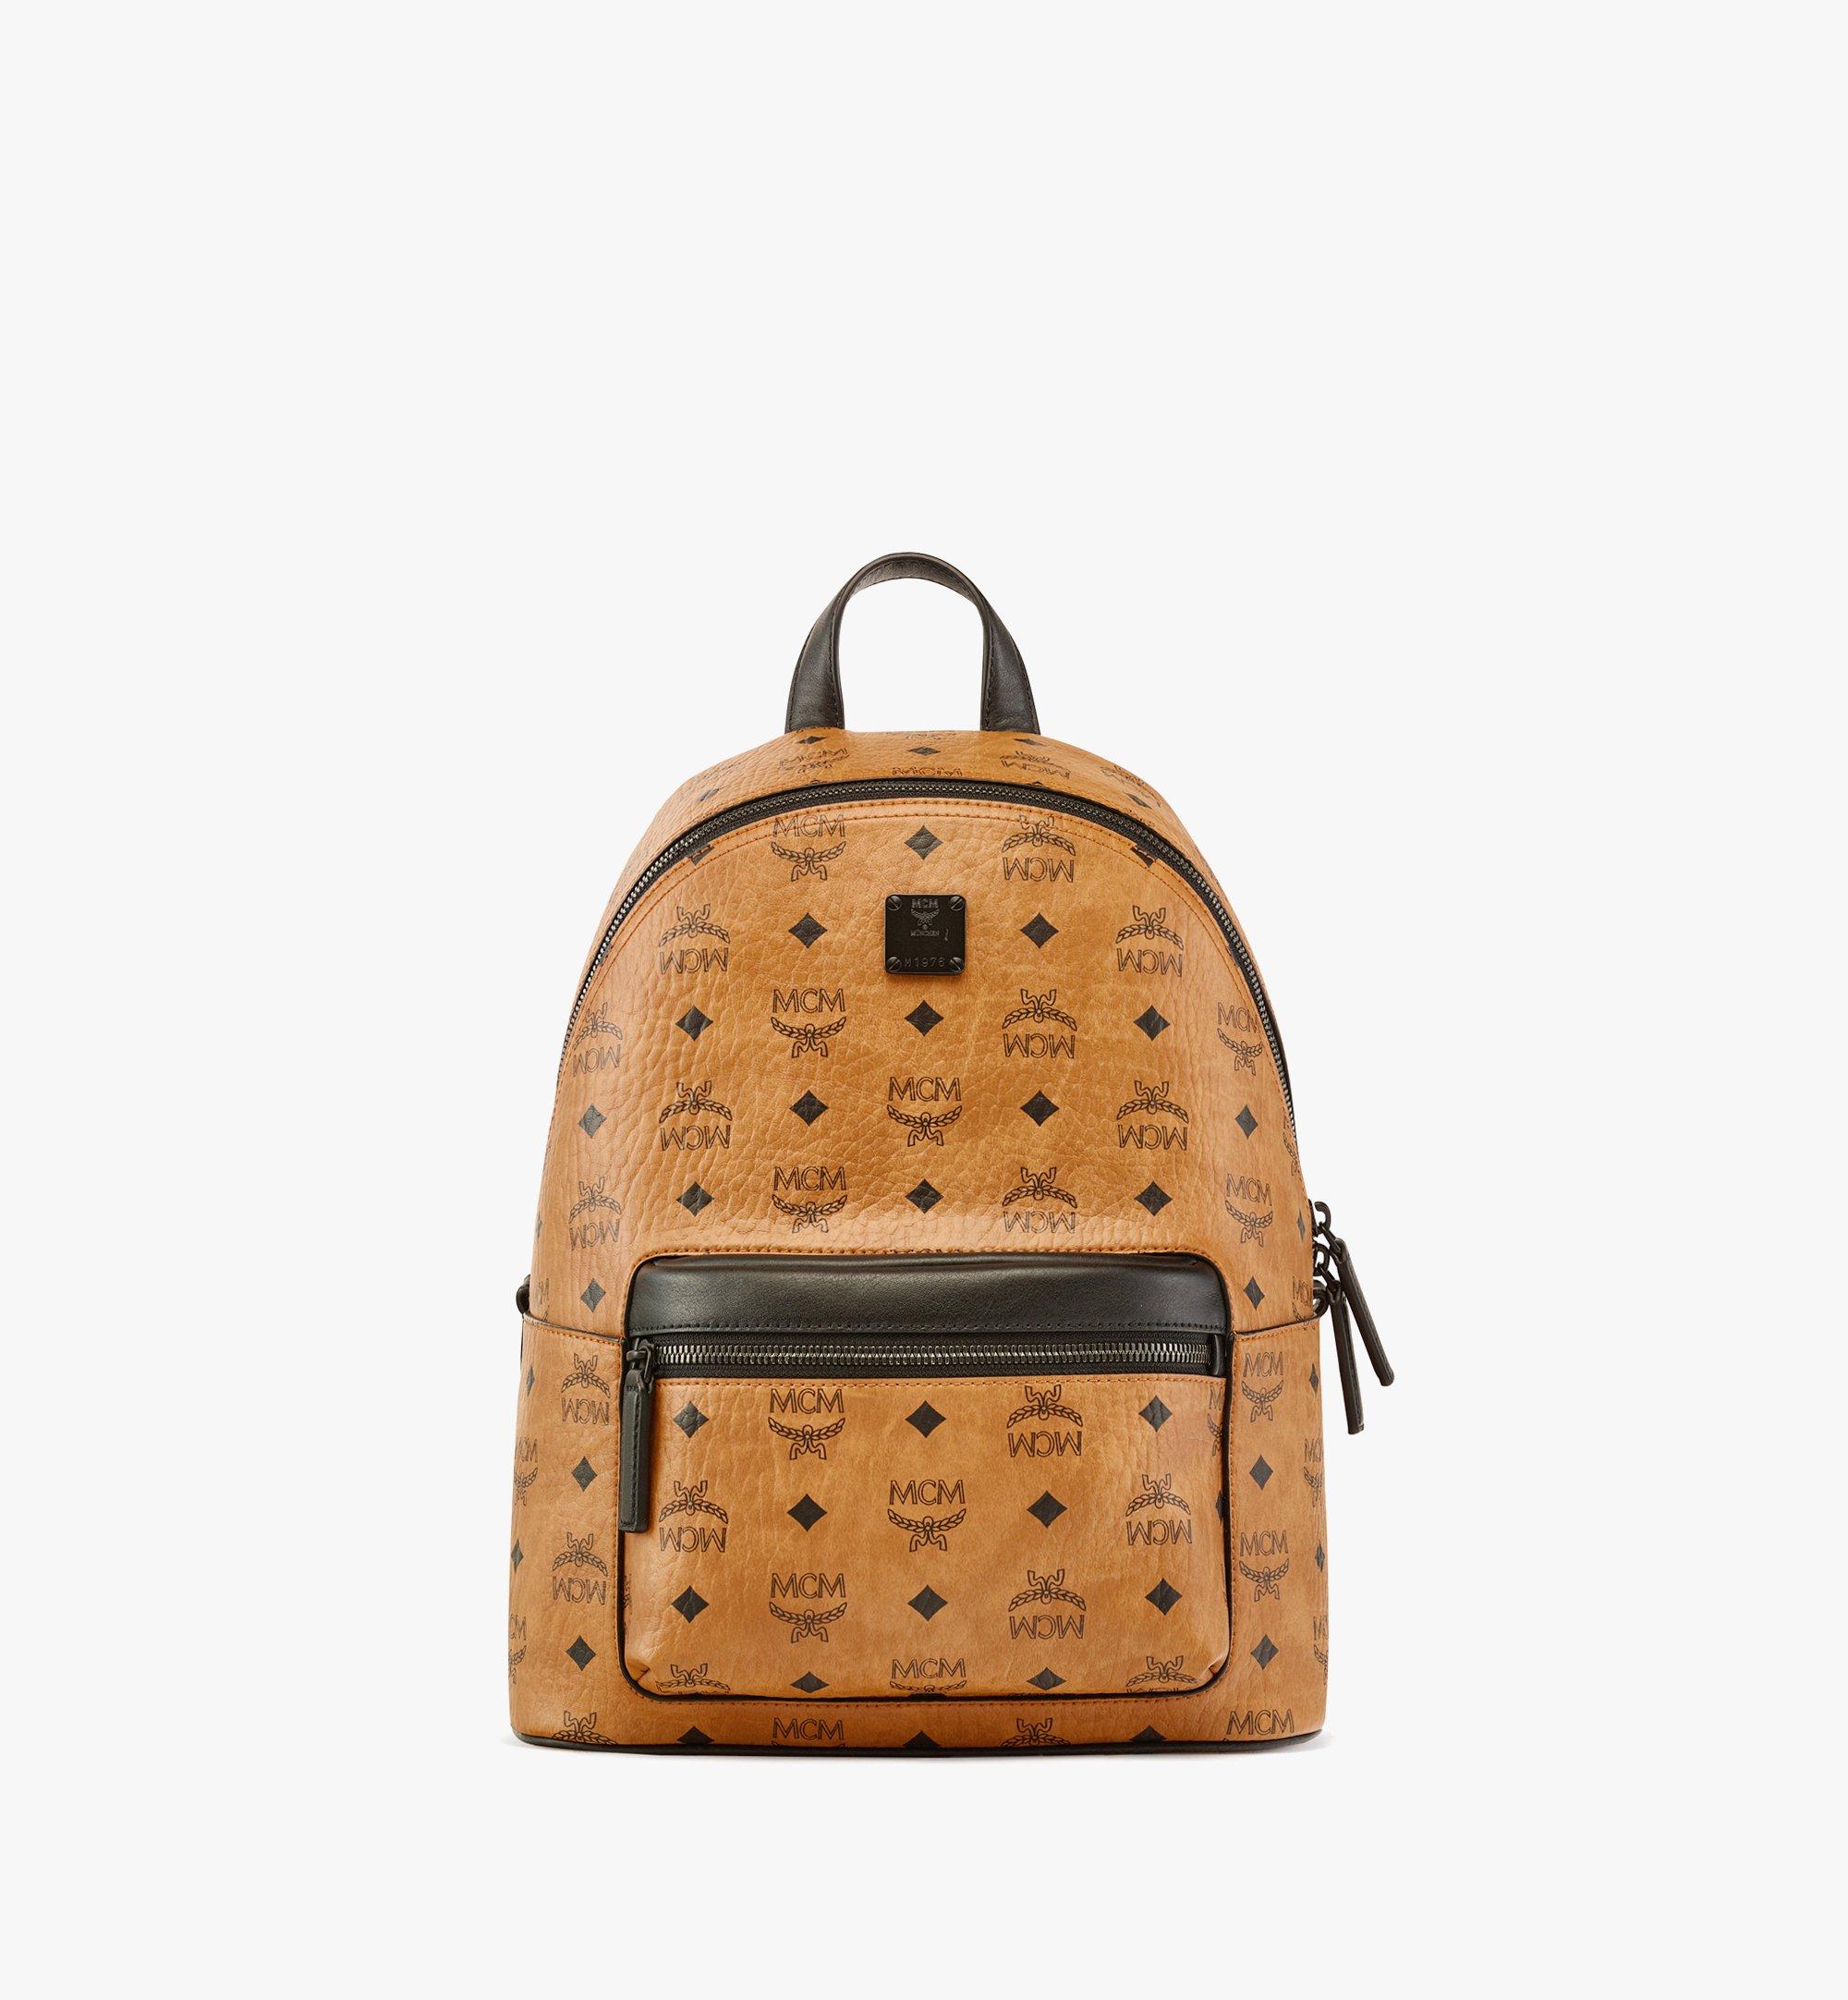 Designer Backpacks, Buy Luxury Leather Bags Online